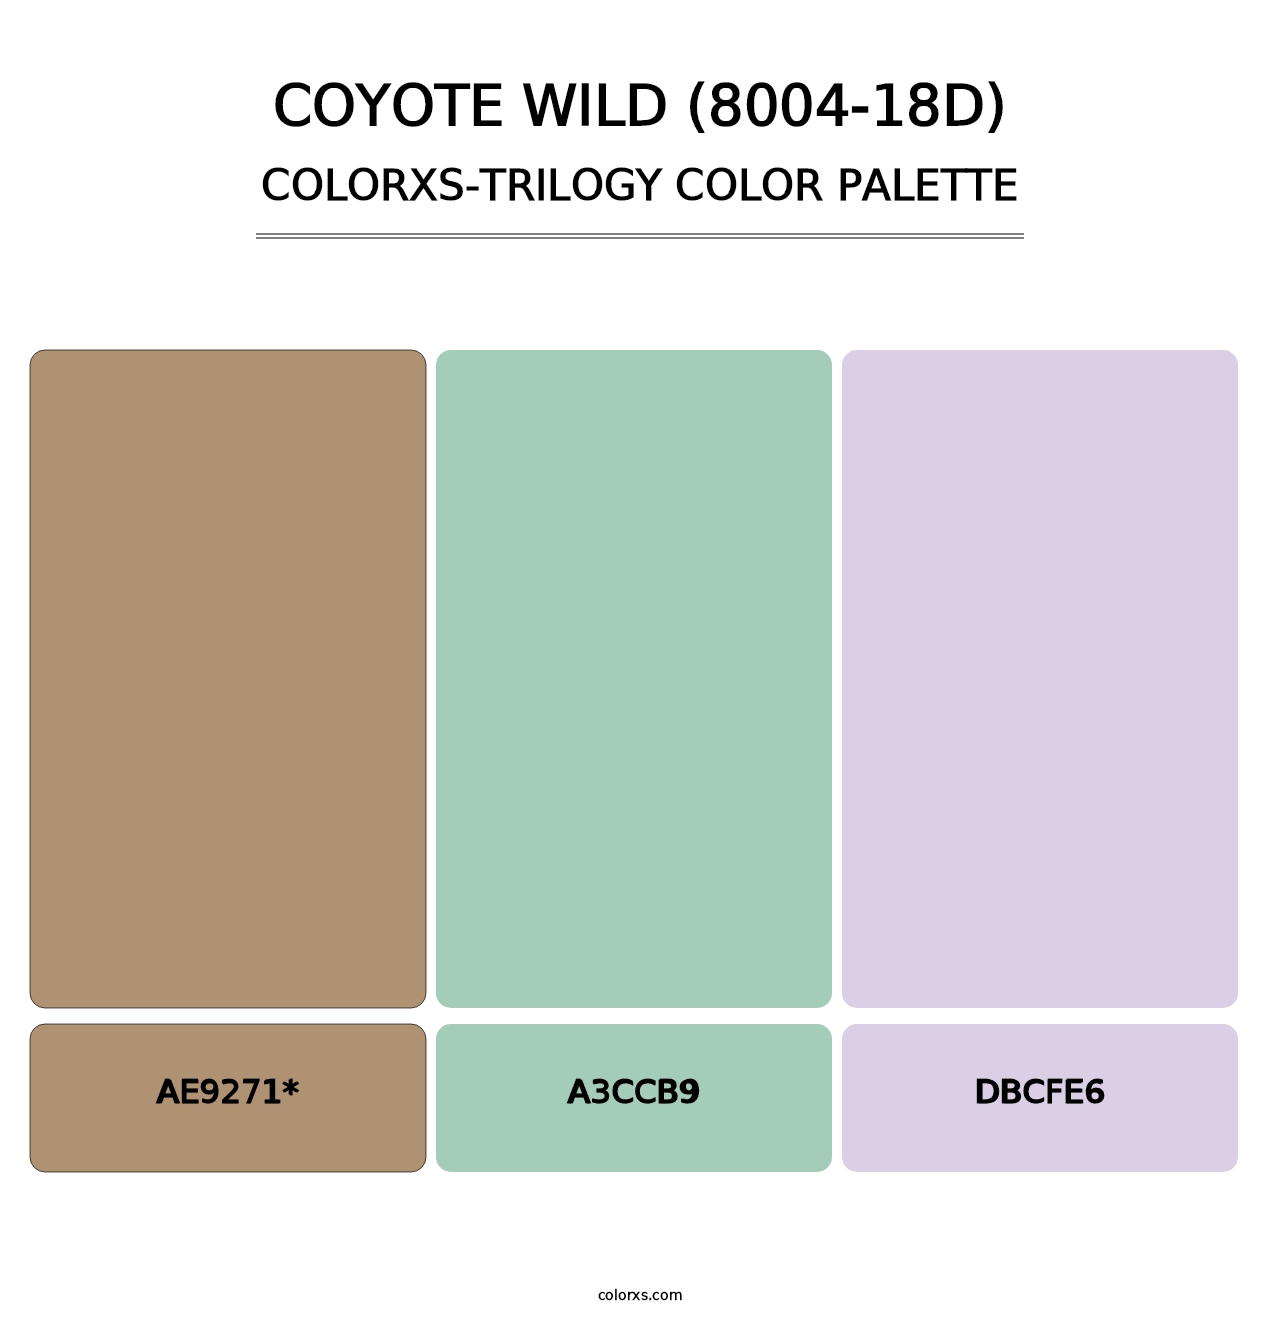 Coyote Wild (8004-18D) - Colorxs Trilogy Palette